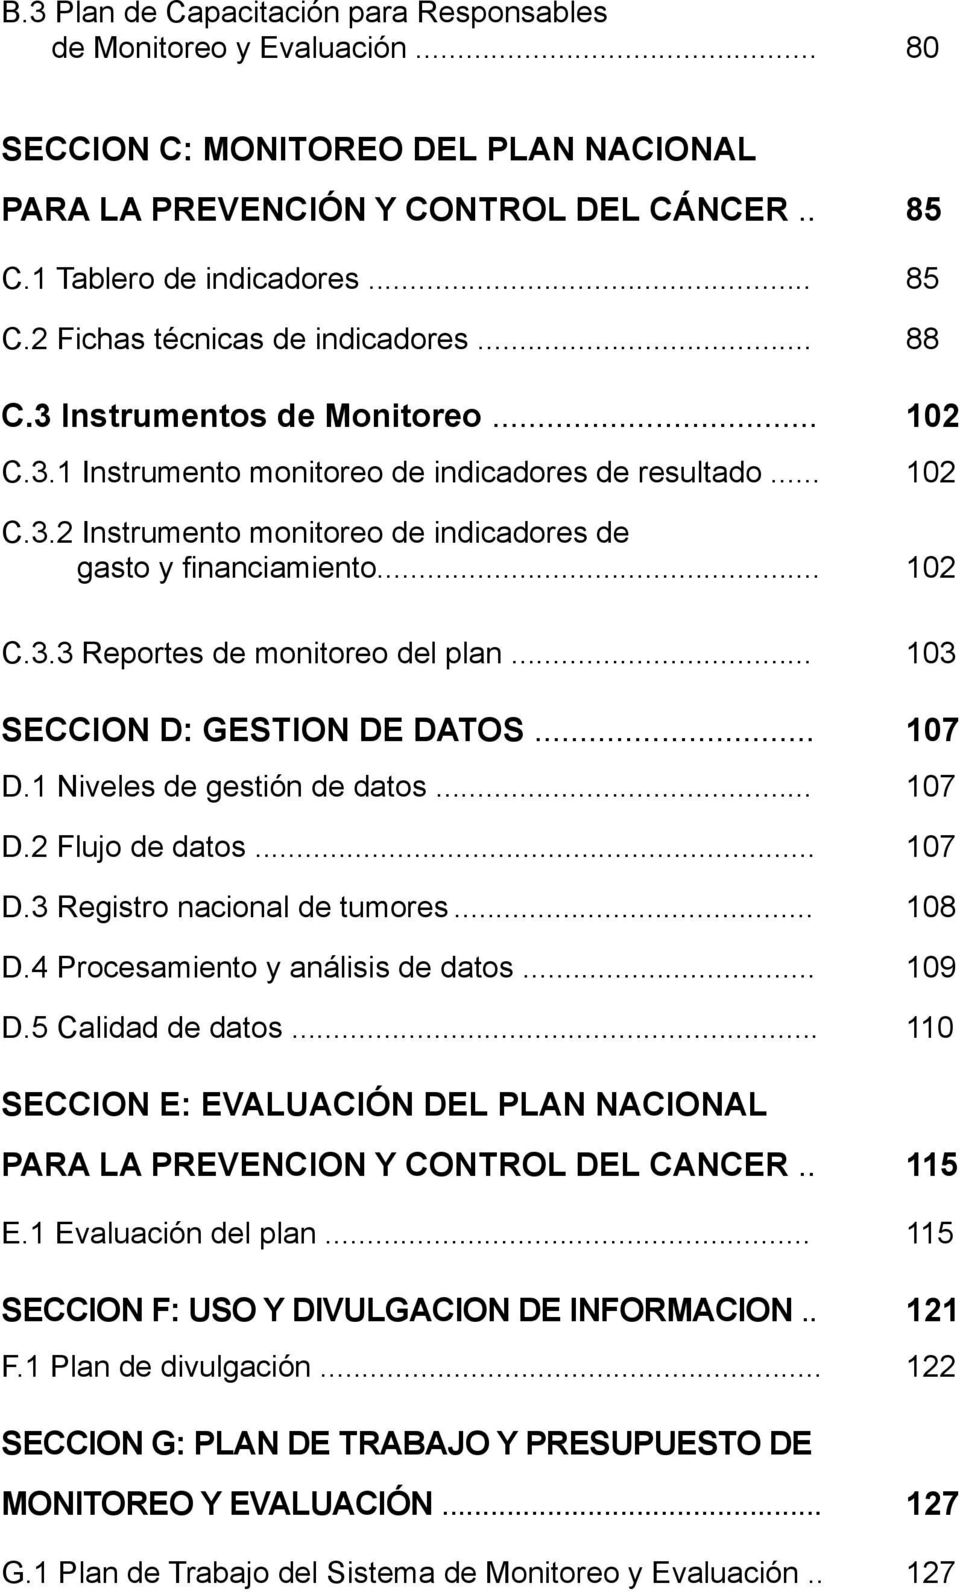 .. 103 SECCION D: GESTION DE DATOS... 107 D.1 Niveles de gestión de datos... 107 D.2 Flujo de datos... 107 D.3 Registro nacional de tumores... 108 D.4 Procesamiento y análisis de datos... 109 D.